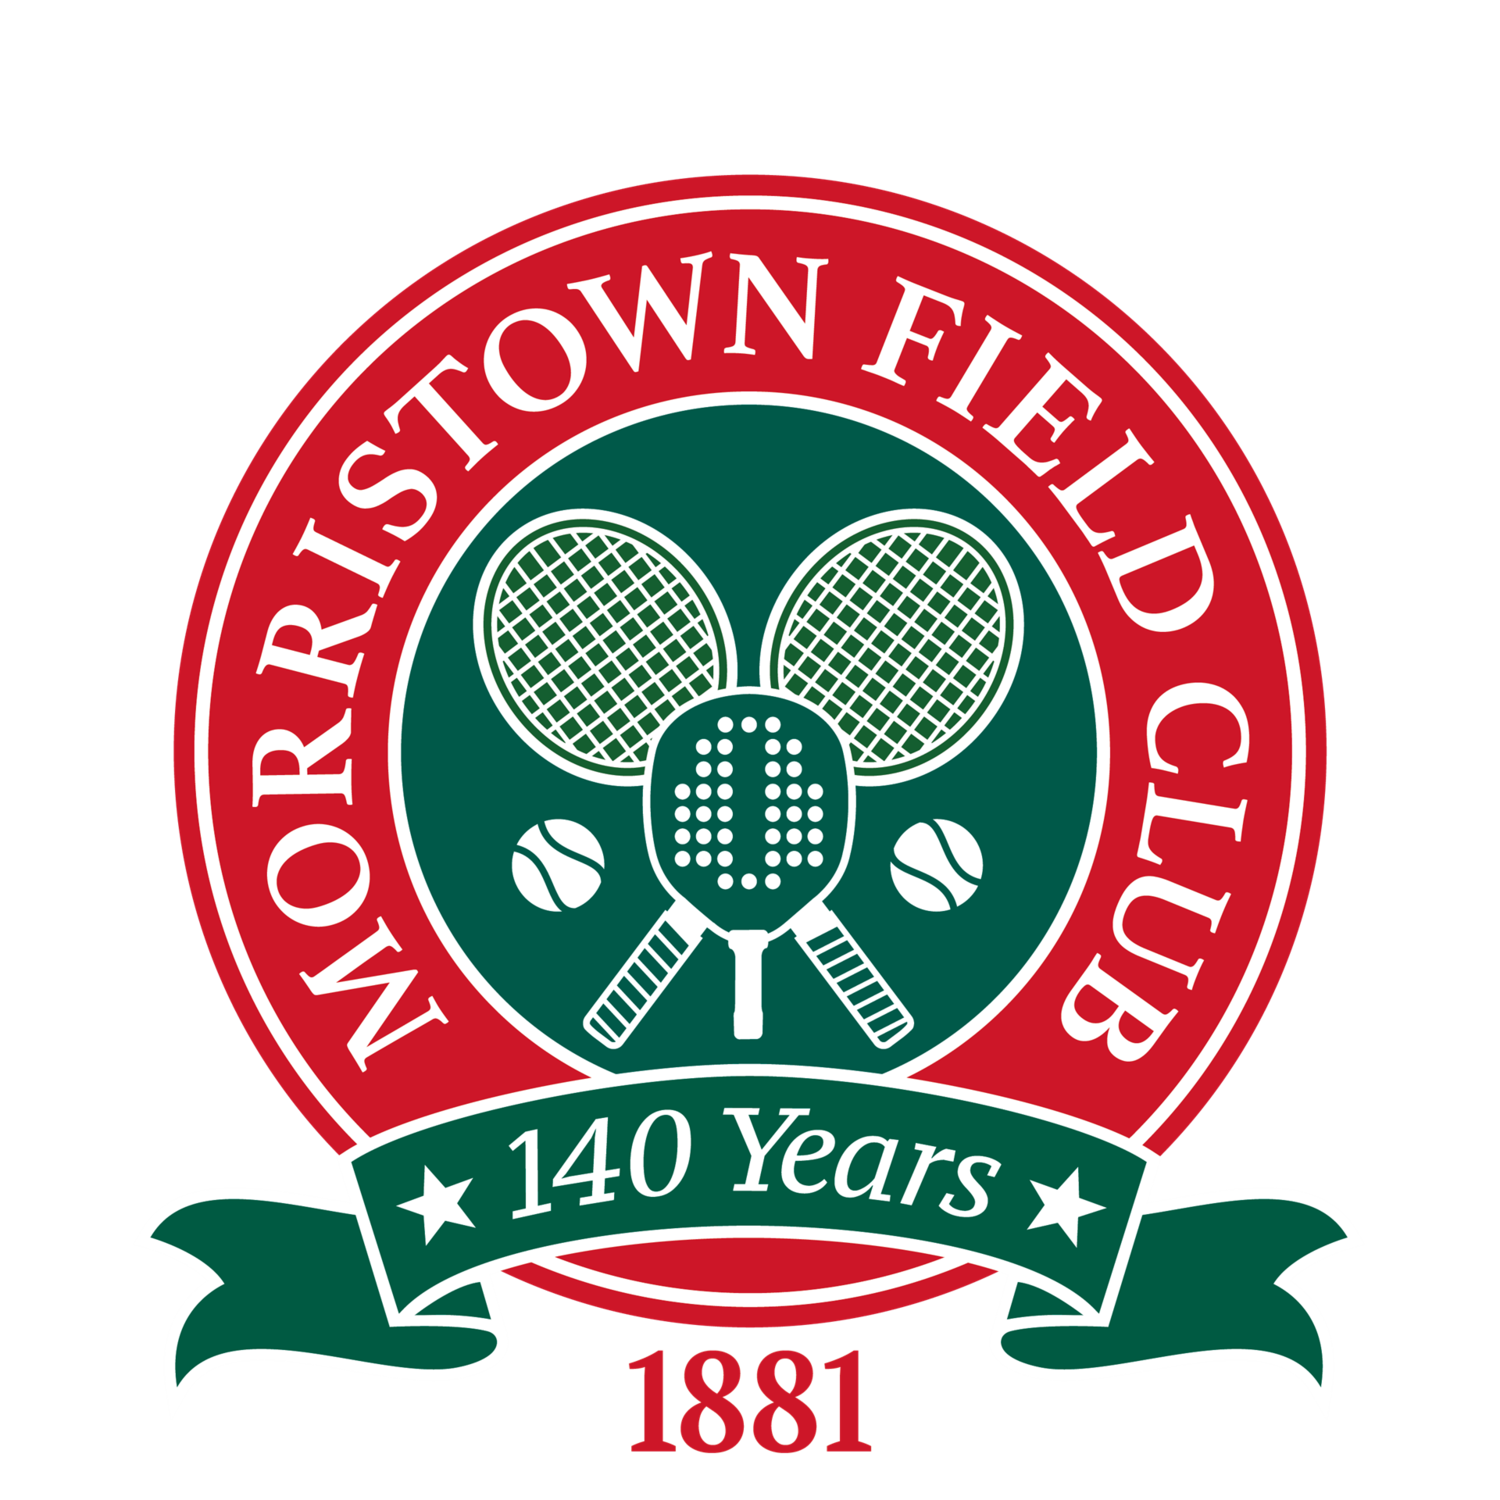 Morristown Field Club